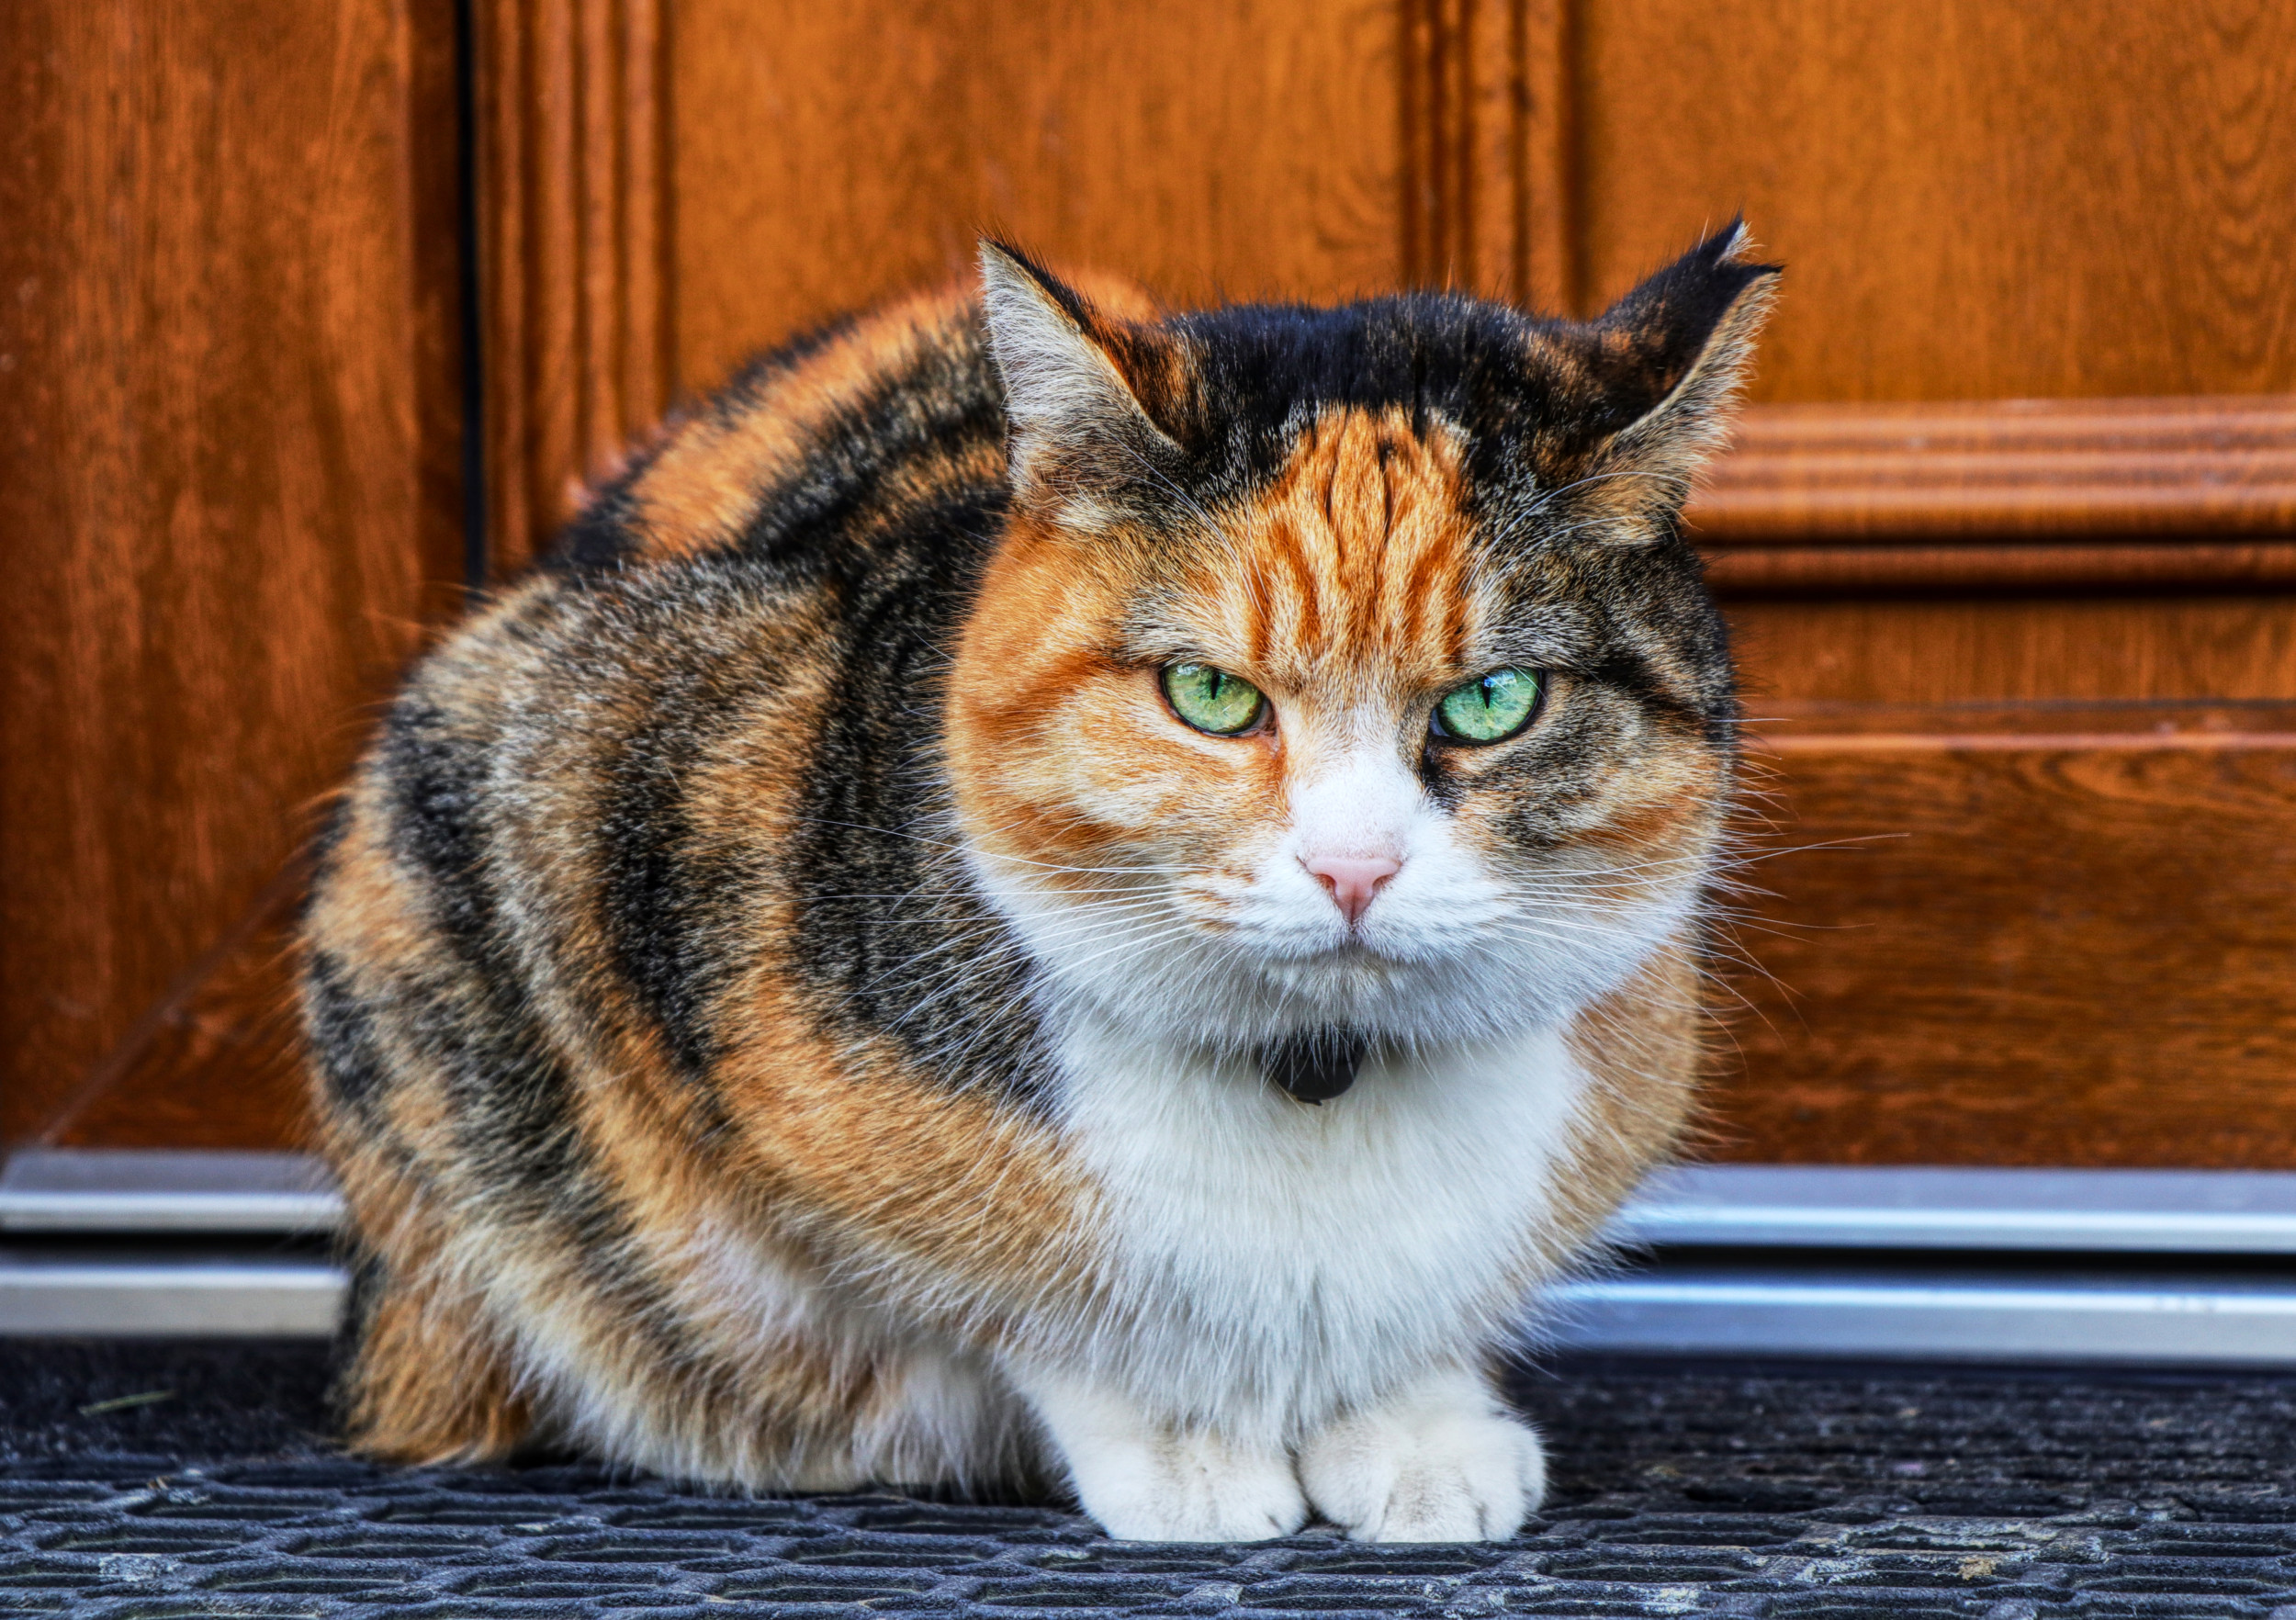 Cat Full of Attitude Filmed Passing Back Stolen Sponge: ‘The Audacity’